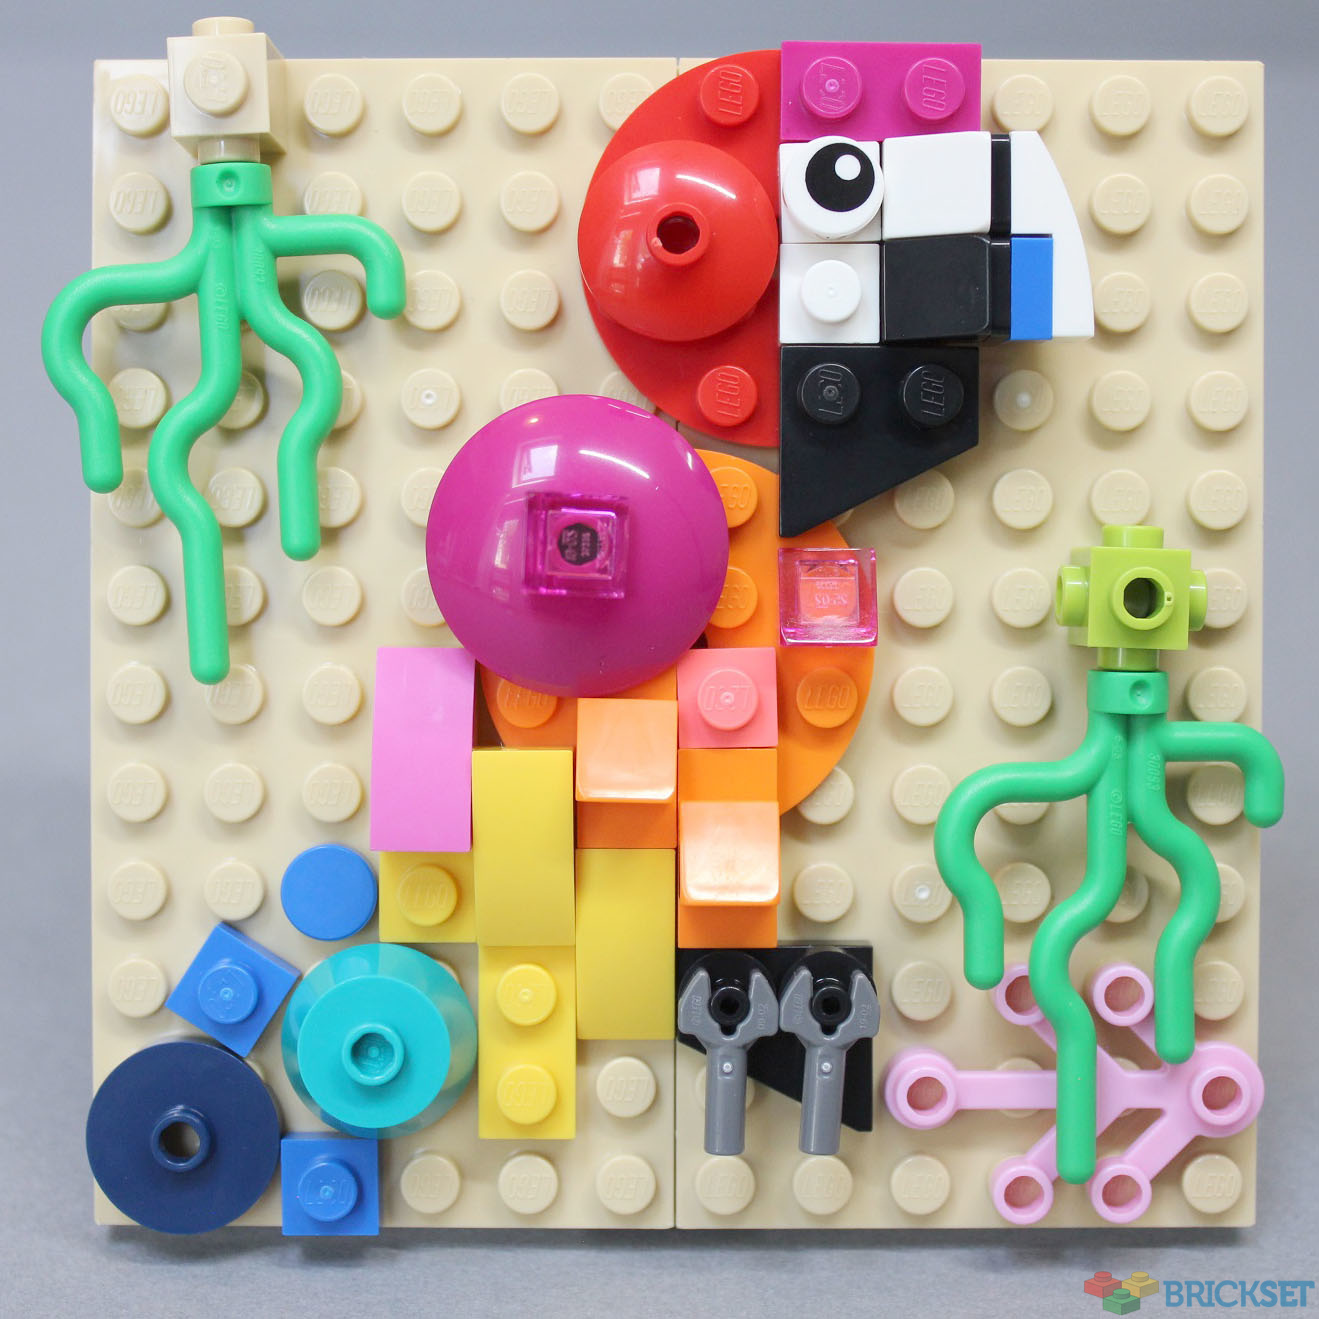 LEGO Creator 3 In 1 Fish Tank Set 31122 Multi - FW21 - US